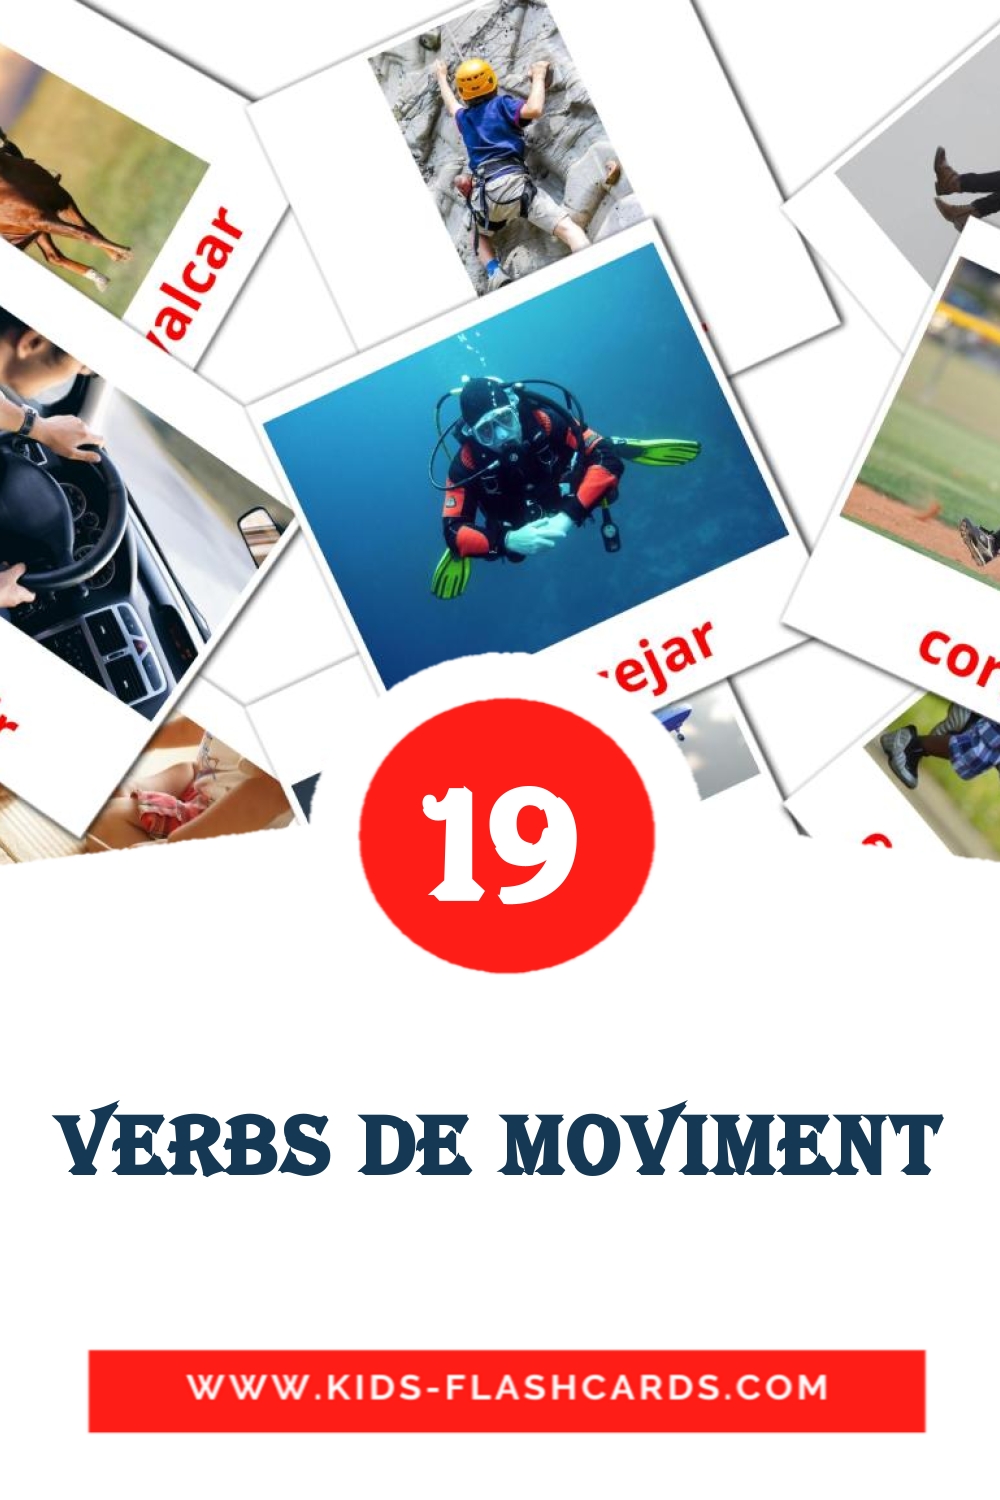 19 tarjetas didacticas de Verbs de Moviment para el jardín de infancia en catalán